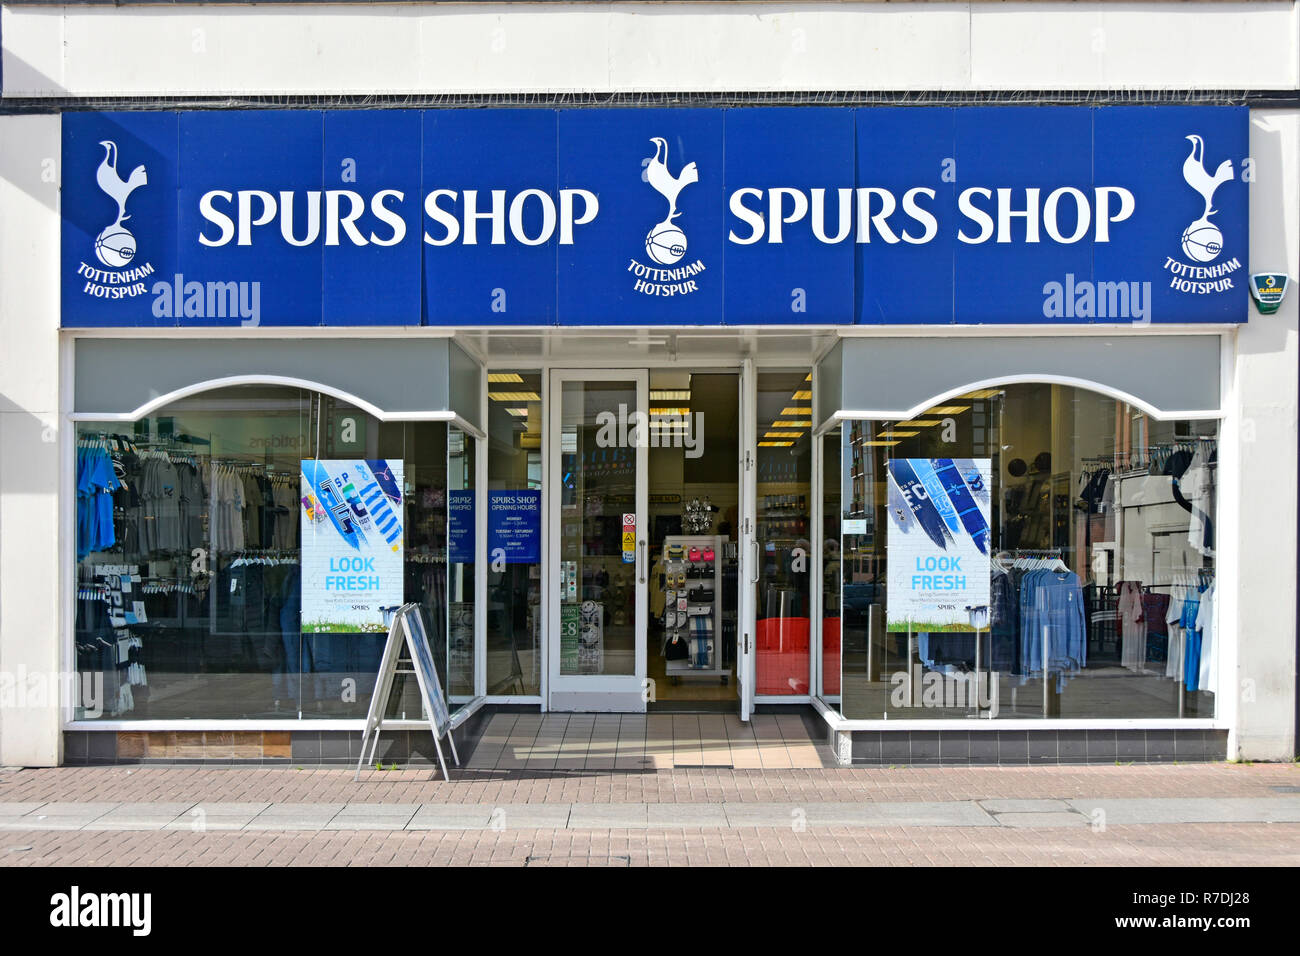 Tottenham Hotspur Premier League Football Club Einzelhandel sport shop Fenster vorne für Unternehmen verkaufen Sporne Fußball-Kit & Fans Erinnerungsstücke Luton GROSSBRITANNIEN Stockfoto